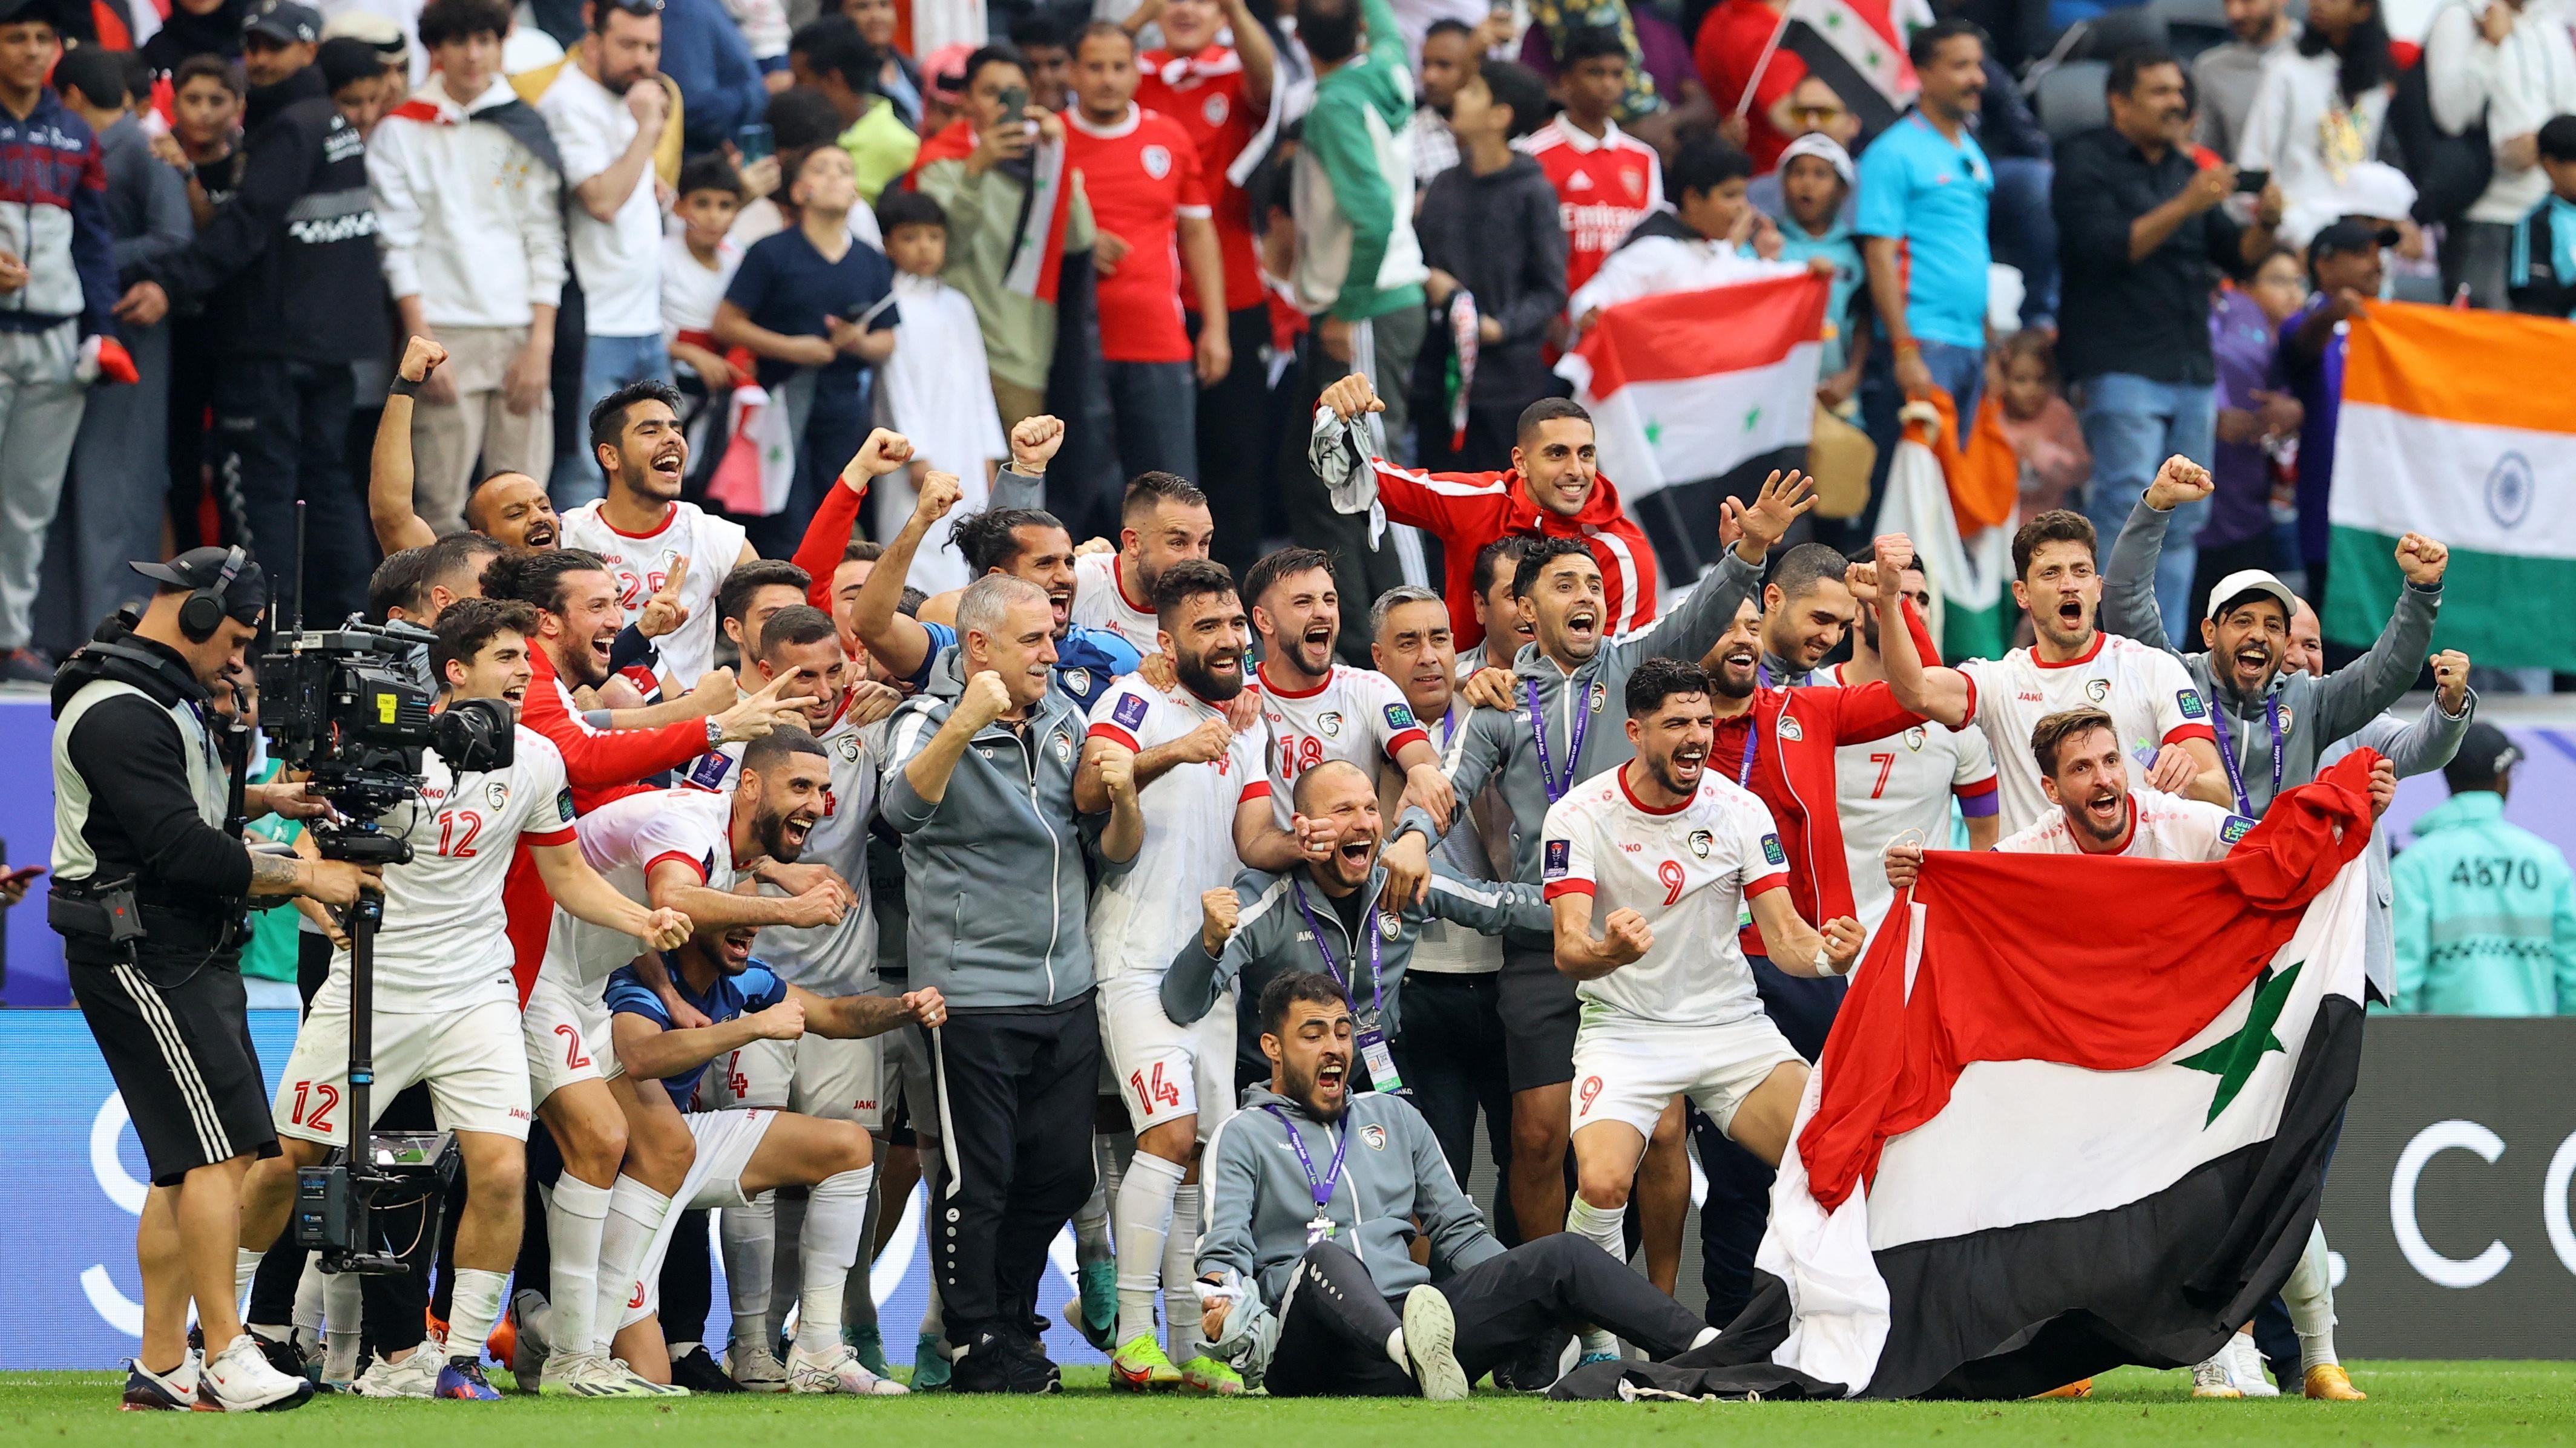 احتفال المنتخب السوري بتأهله للمرة الأولى للدور الثاني في كأس آسيا